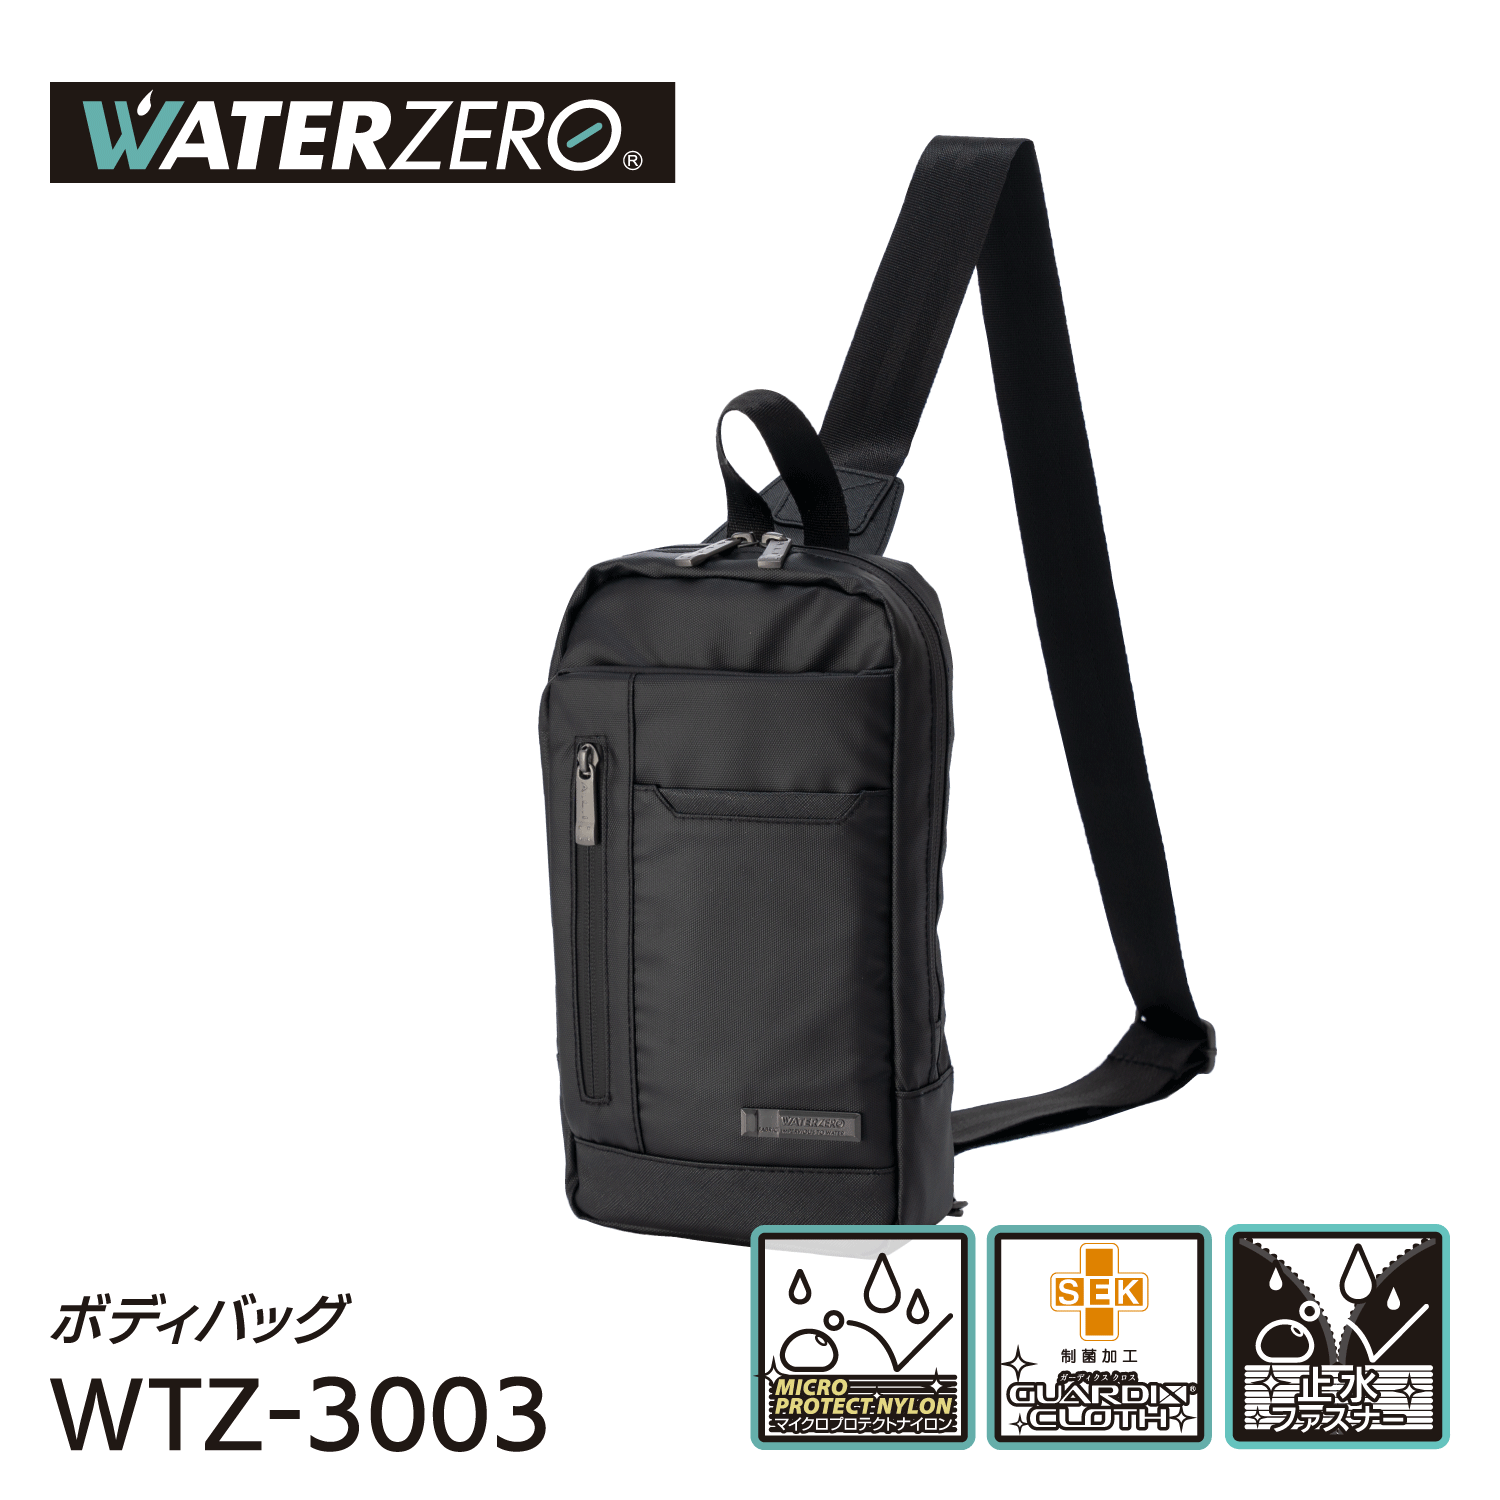 軽量・強撥水シリーズ 止水ファスナー搭載 抗菌加工 NEW WATER ZERO ボディバッグ WTZ-3003